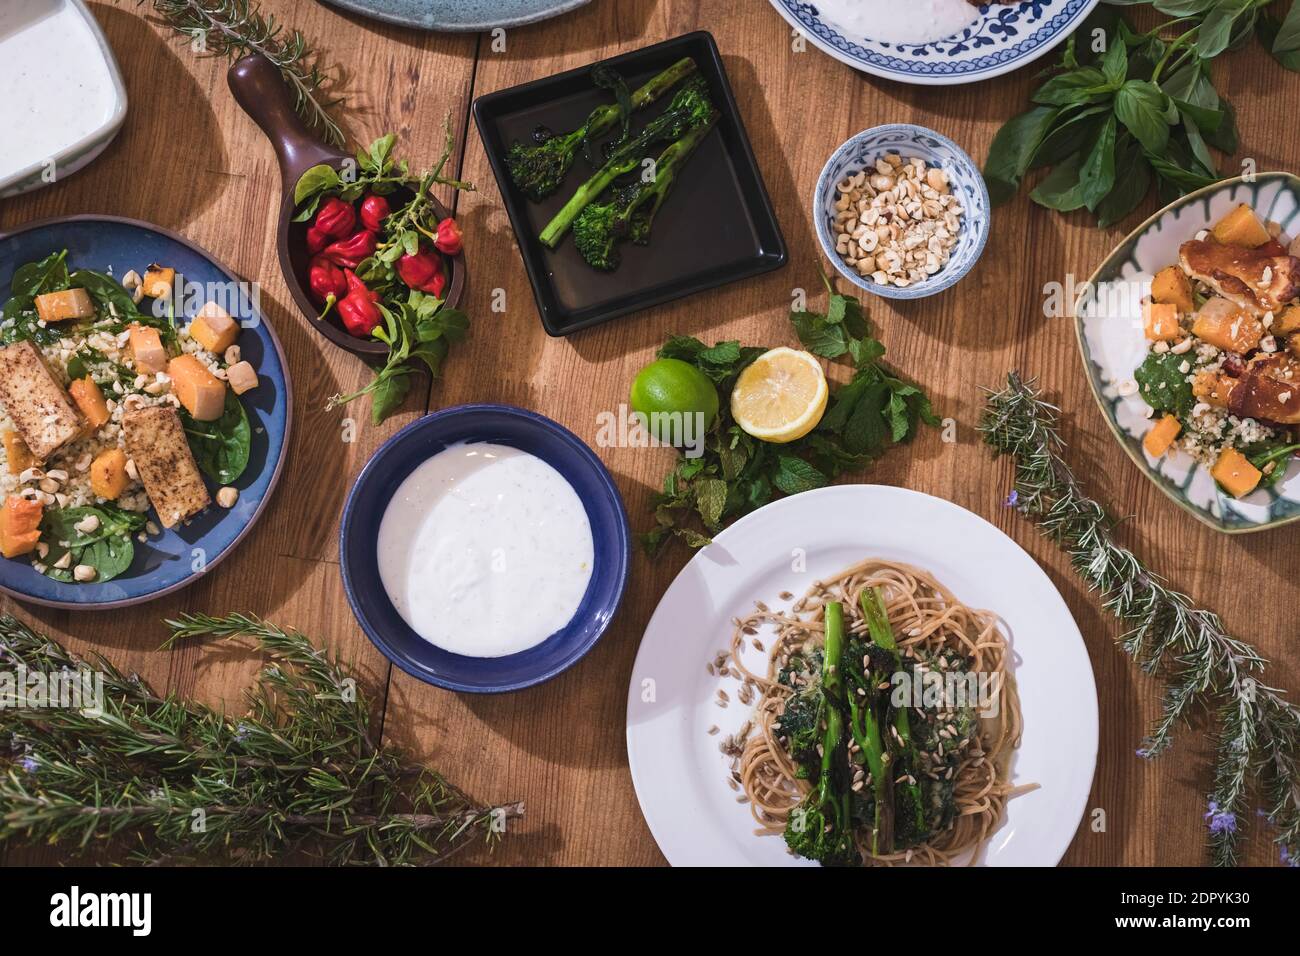 Légumes grillés et plats sains sur une table en bois de fantaisie. Plats méditerranéens avec asperges, tofu, seitan et fromage Halloumi. Gluten Banque D'Images